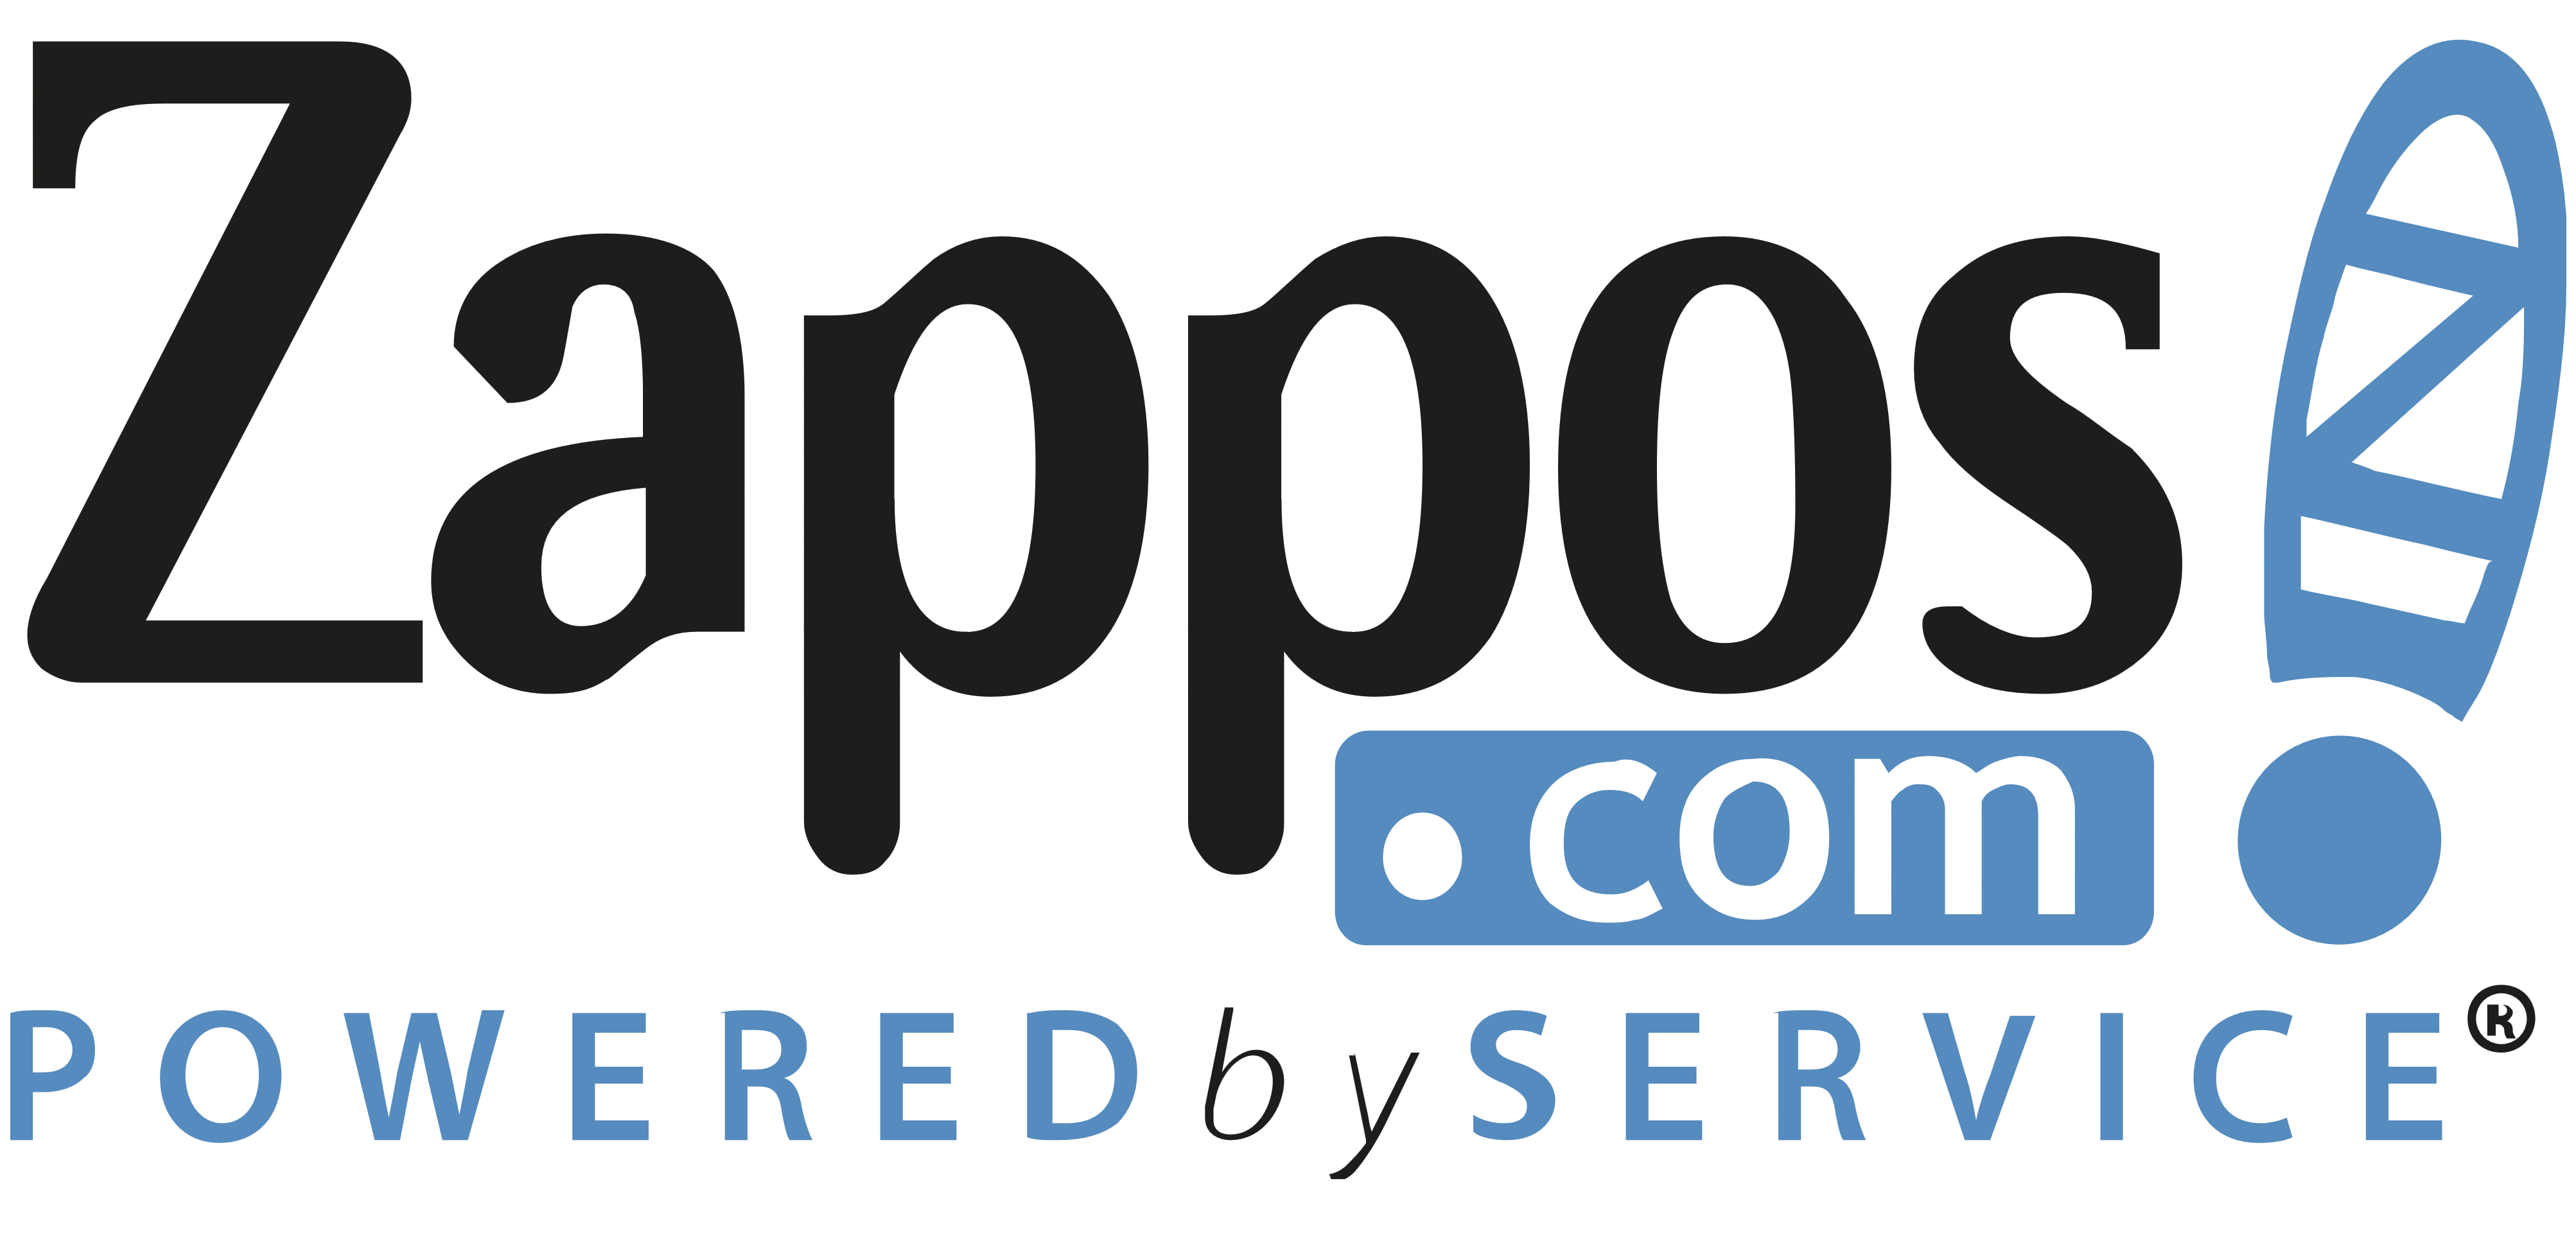 Zappos logo, logotype